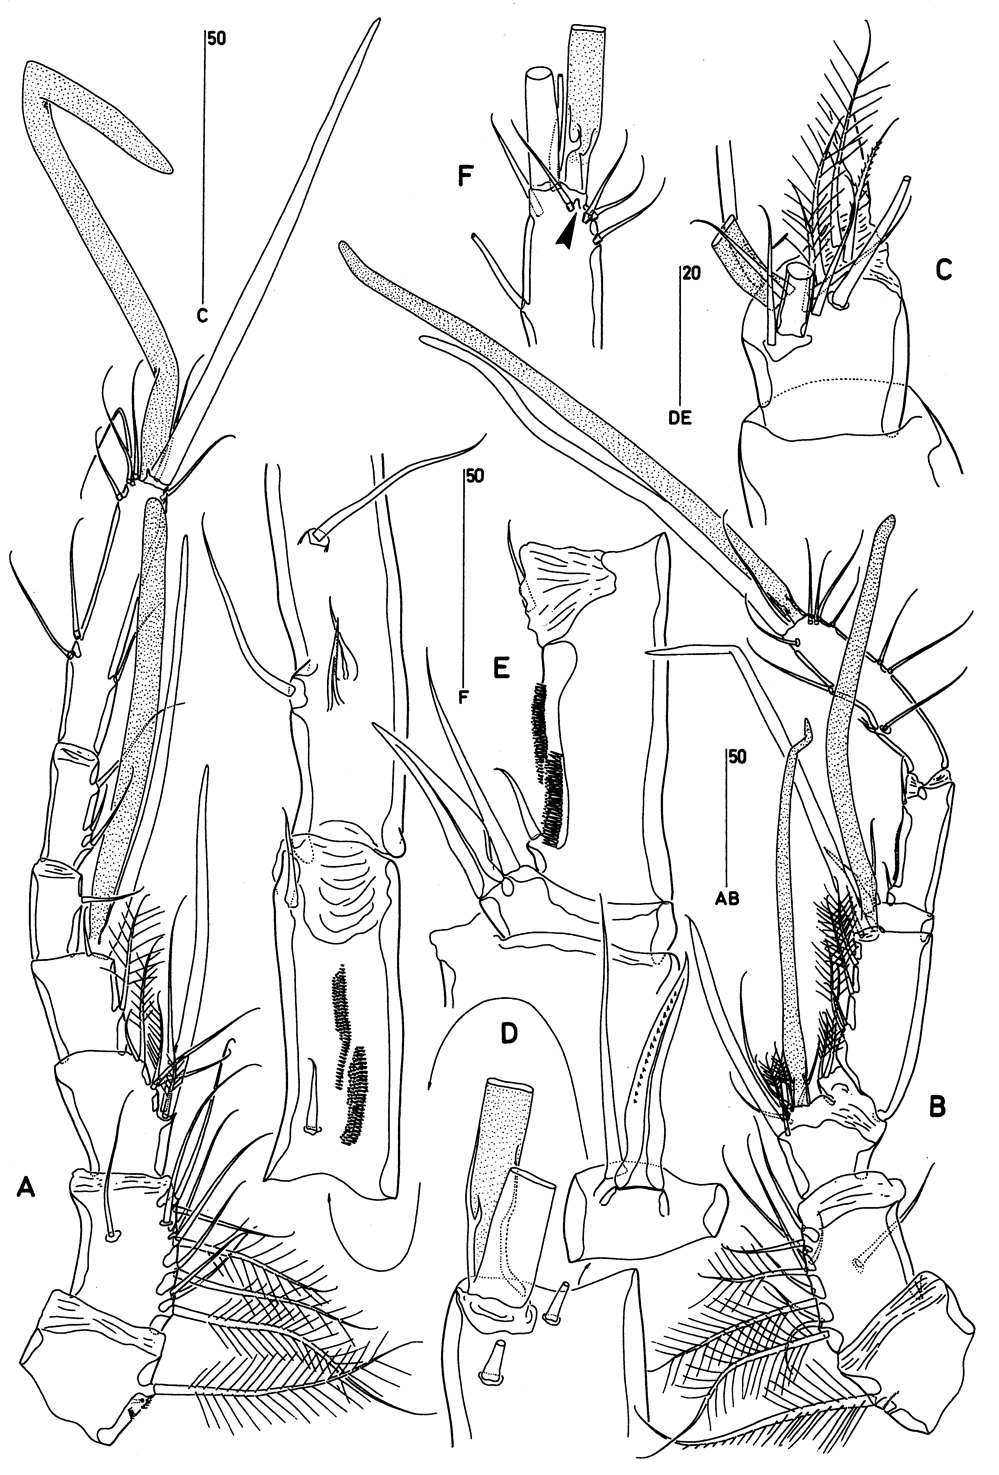 Espce Clytemnestra scutellata - Planche 2 de figures morphologiques